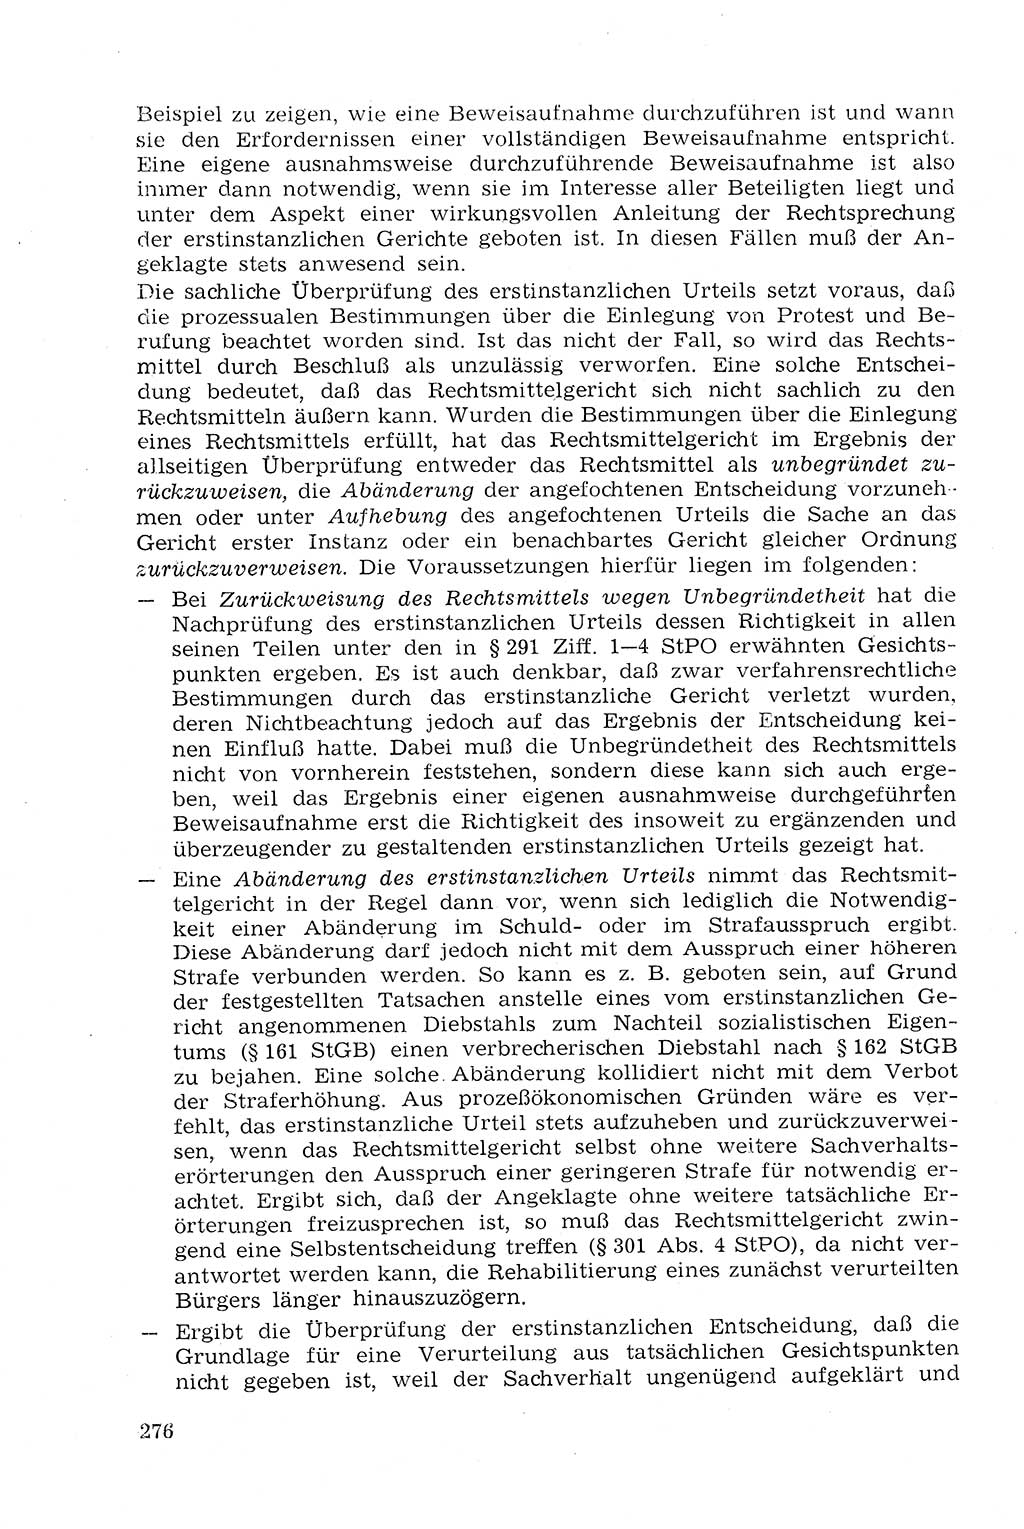 Strafprozeßrecht der DDR (Deutsche Demokratische Republik), Lehrmaterial 1969, Seite 276 (Strafprozeßr. DDR Lehrmat. 1969, S. 276)